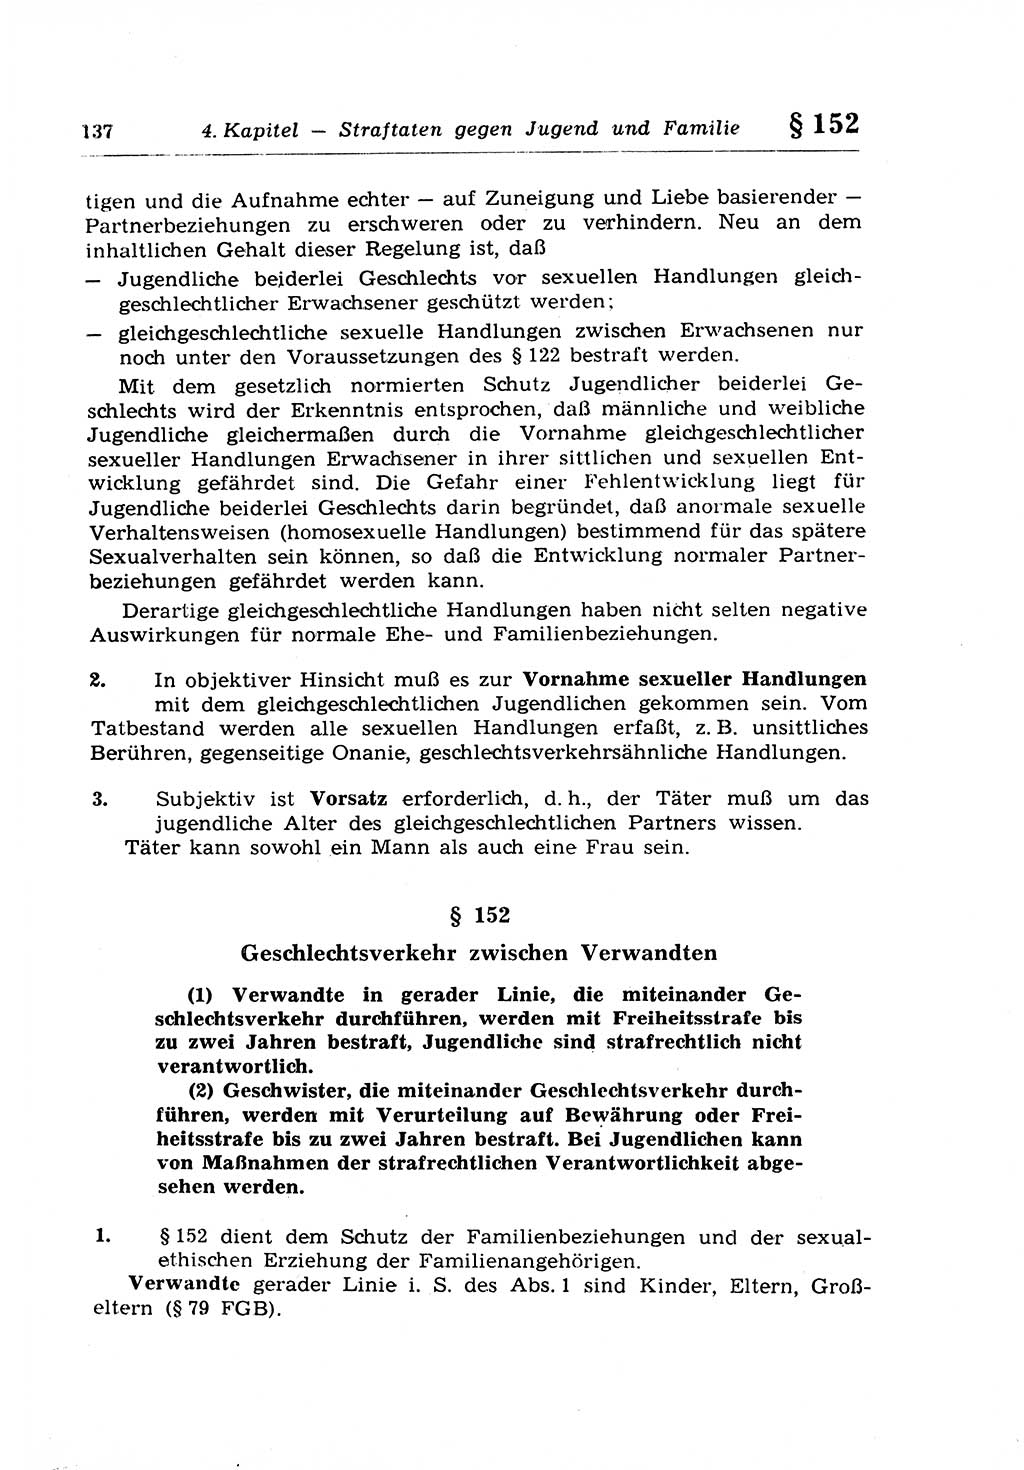 Strafrecht der Deutschen Demokratischen Republik (DDR), Lehrkommentar zum Strafgesetzbuch (StGB), Besonderer Teil 1970, Seite 137 (Strafr. DDR Lehrkomm. StGB BT 1970, S. 137)